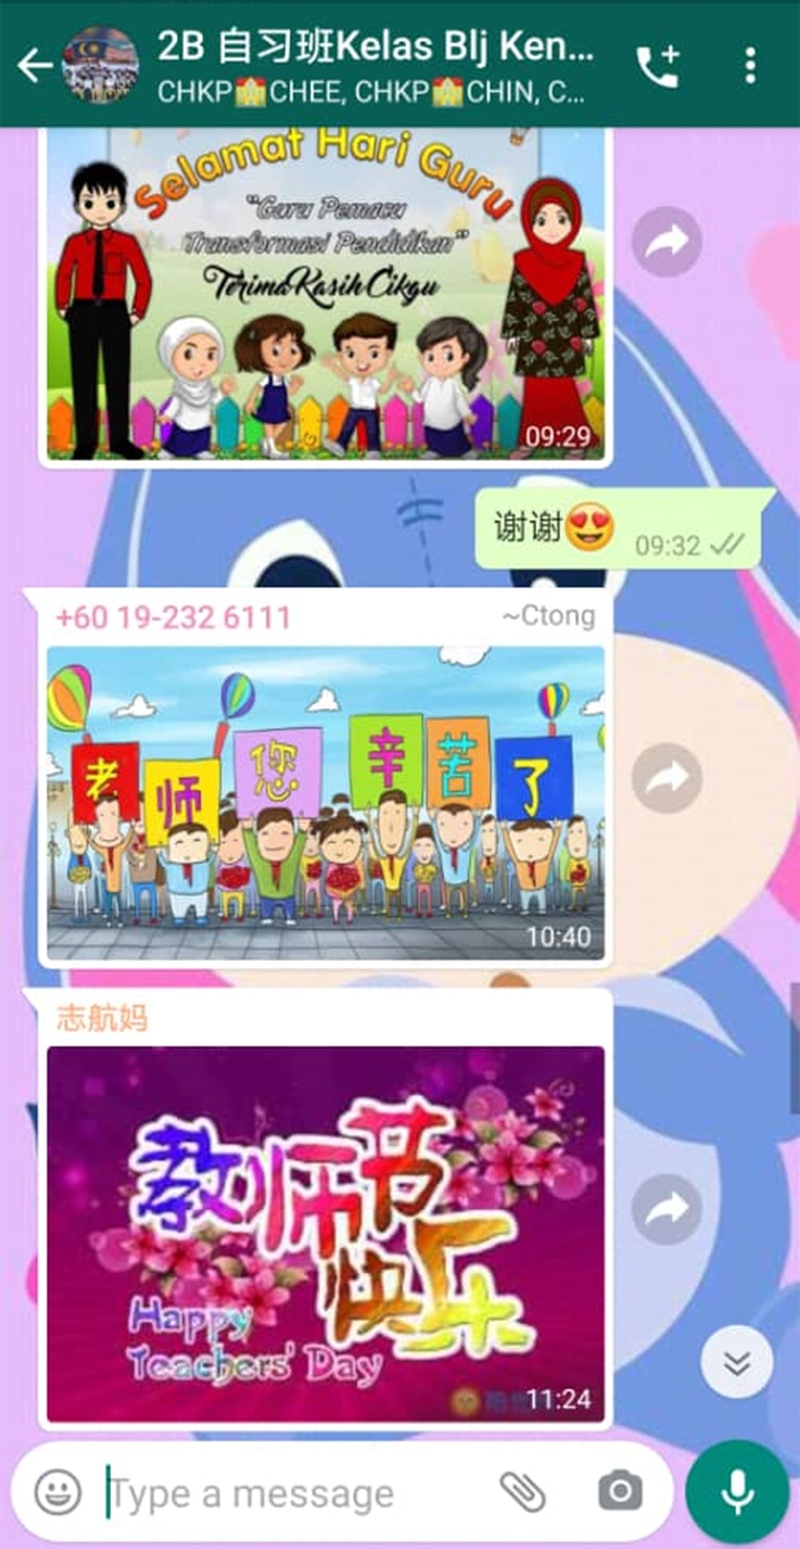 陈咏蔚分享学生或家长在群组内发送各式各样的祝福语及教师节图片等。